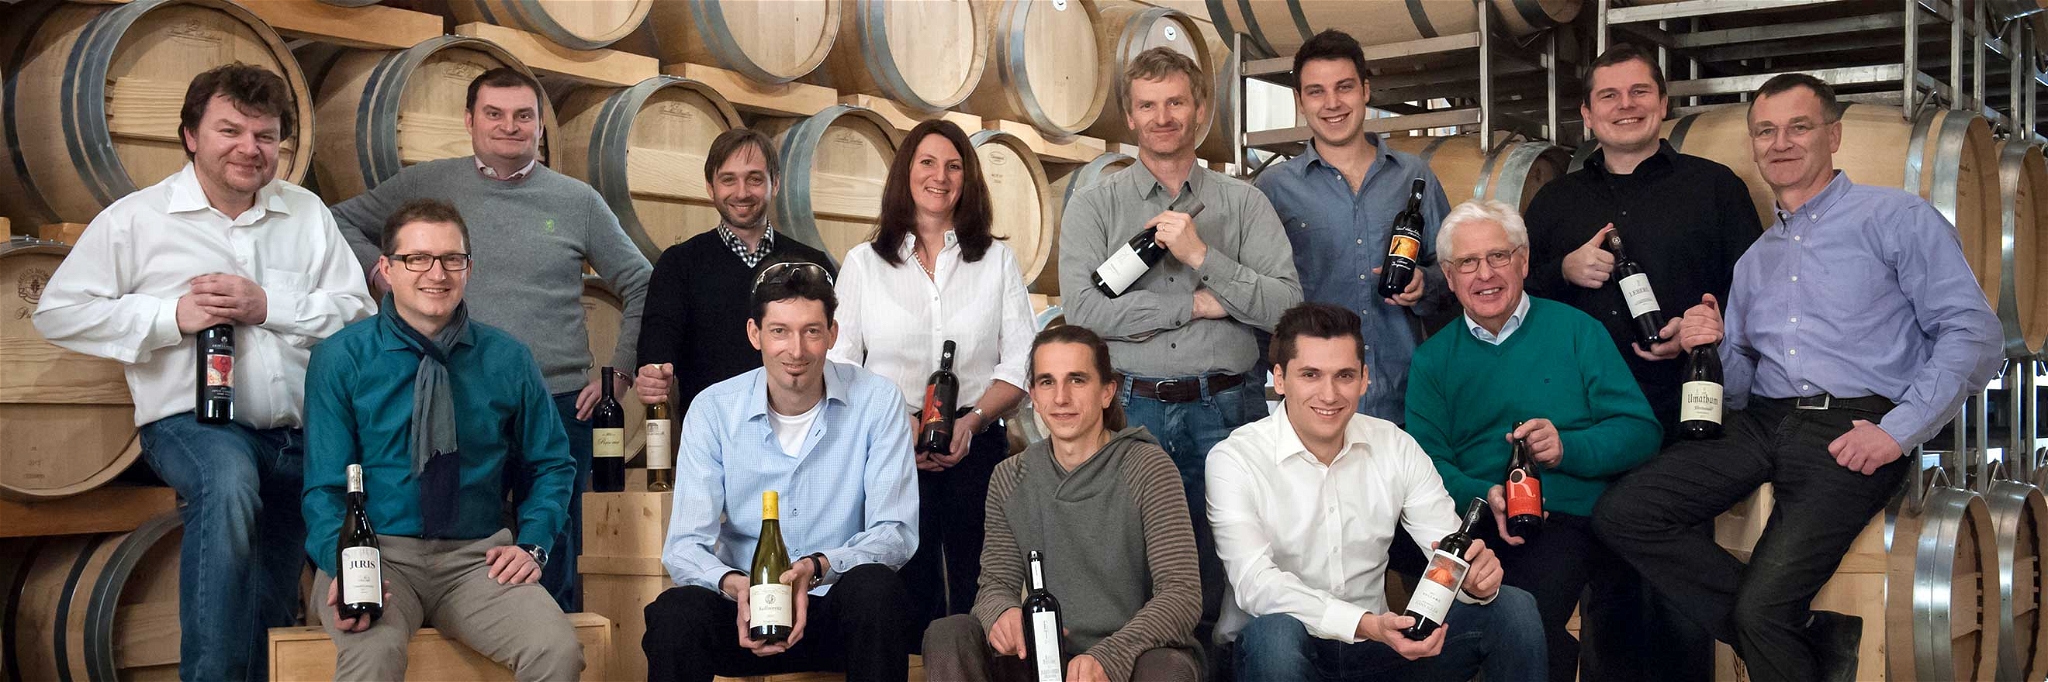 13 burgenländische Wein­güter stellen edle Weine zum Verkosten bereit.